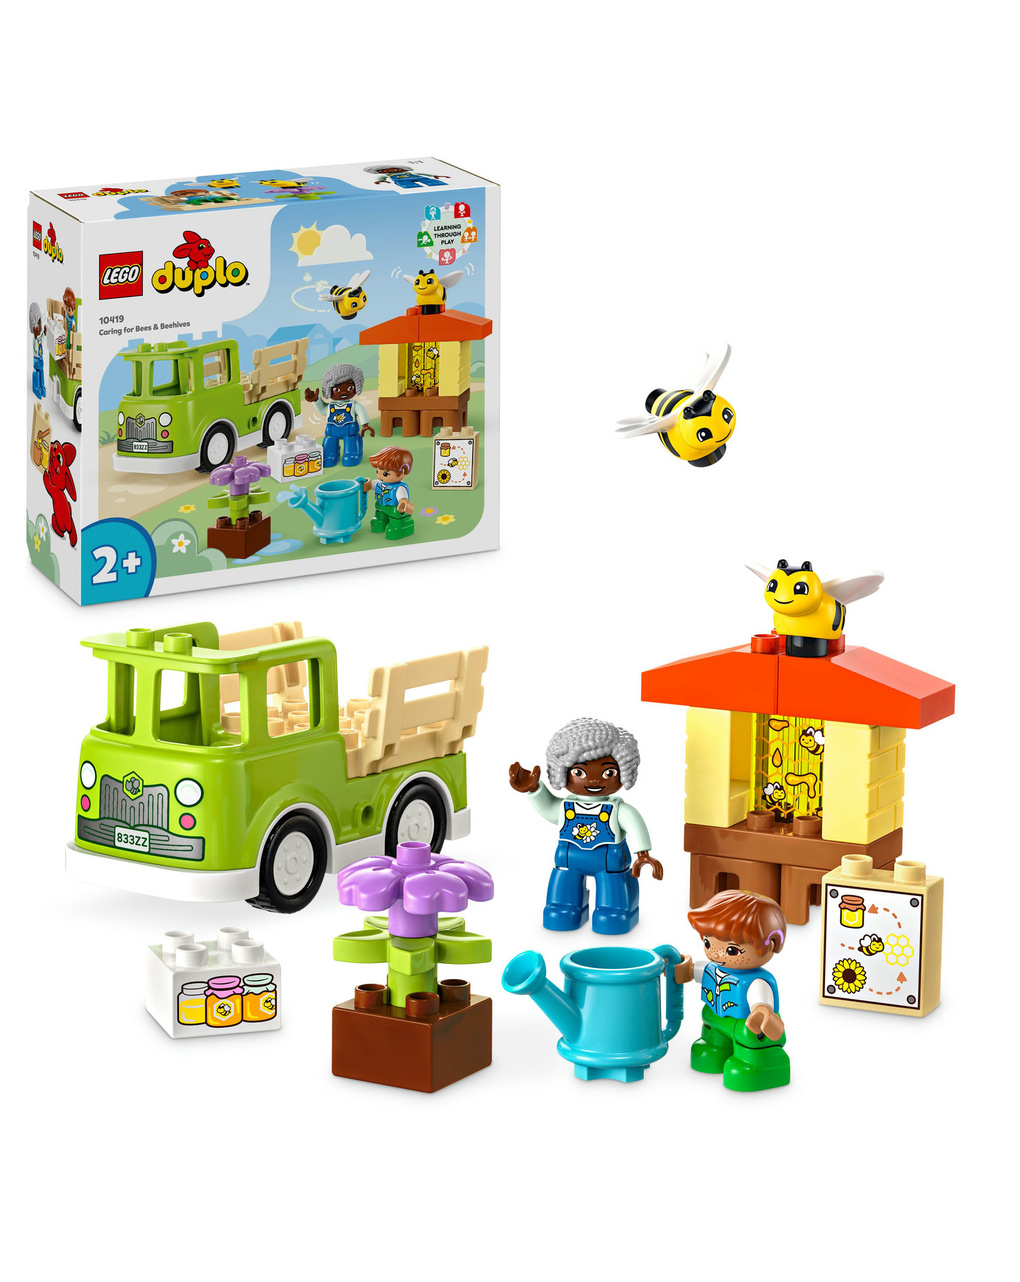 Camion giocattolo cura di api e alveari - 10419 - lego duplo - Duplo